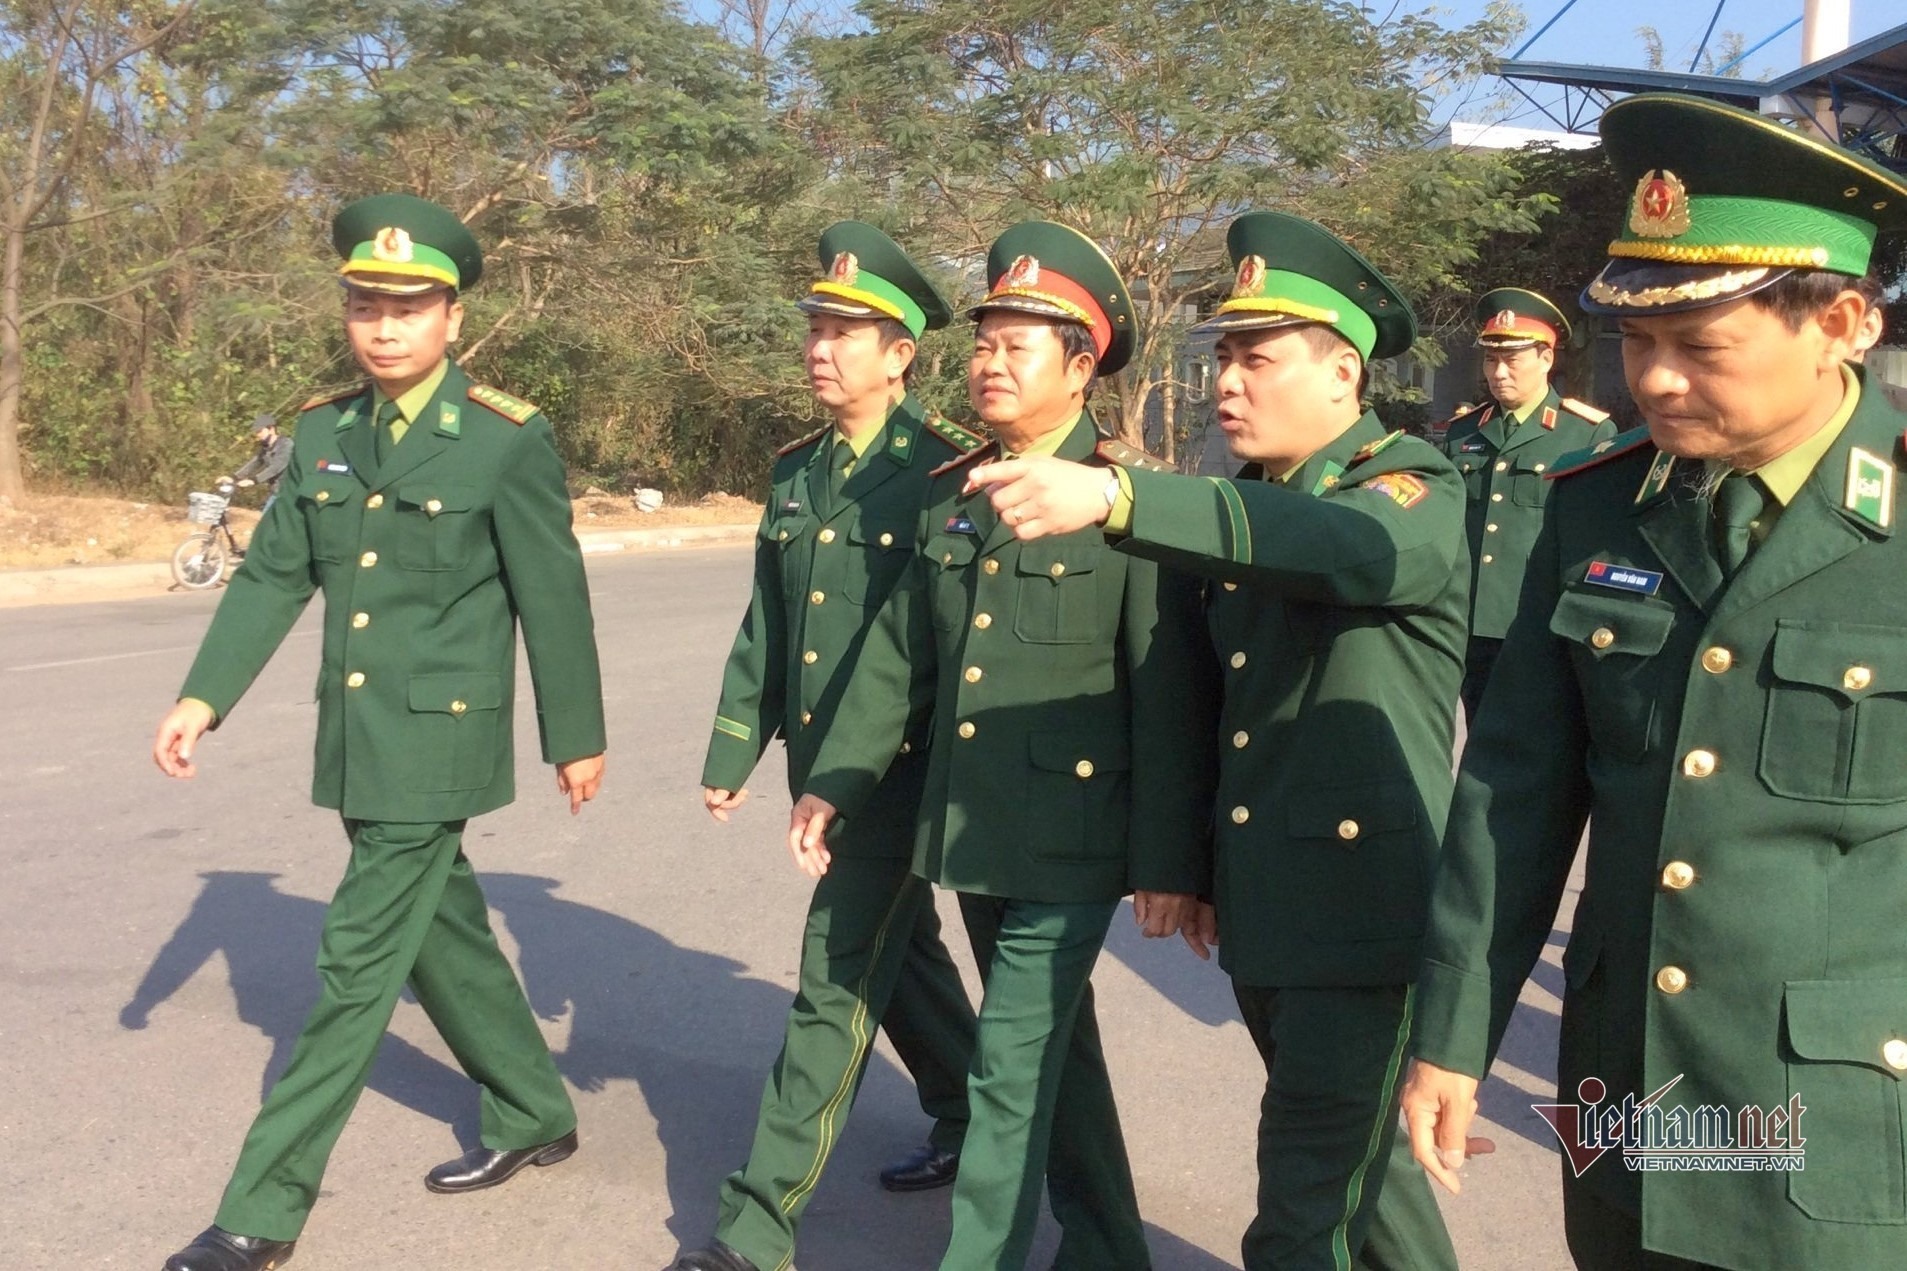 Thiếu tướng Hoàng Hữu Chiến (khi đó mang quân hàm Đại tá, người ngoài cùng bên trái) tháp tùng lãnh đạo Bộ Quốc phòng tới kiểm tra toàn diện tại BĐBP Quảng Trị năm 2015